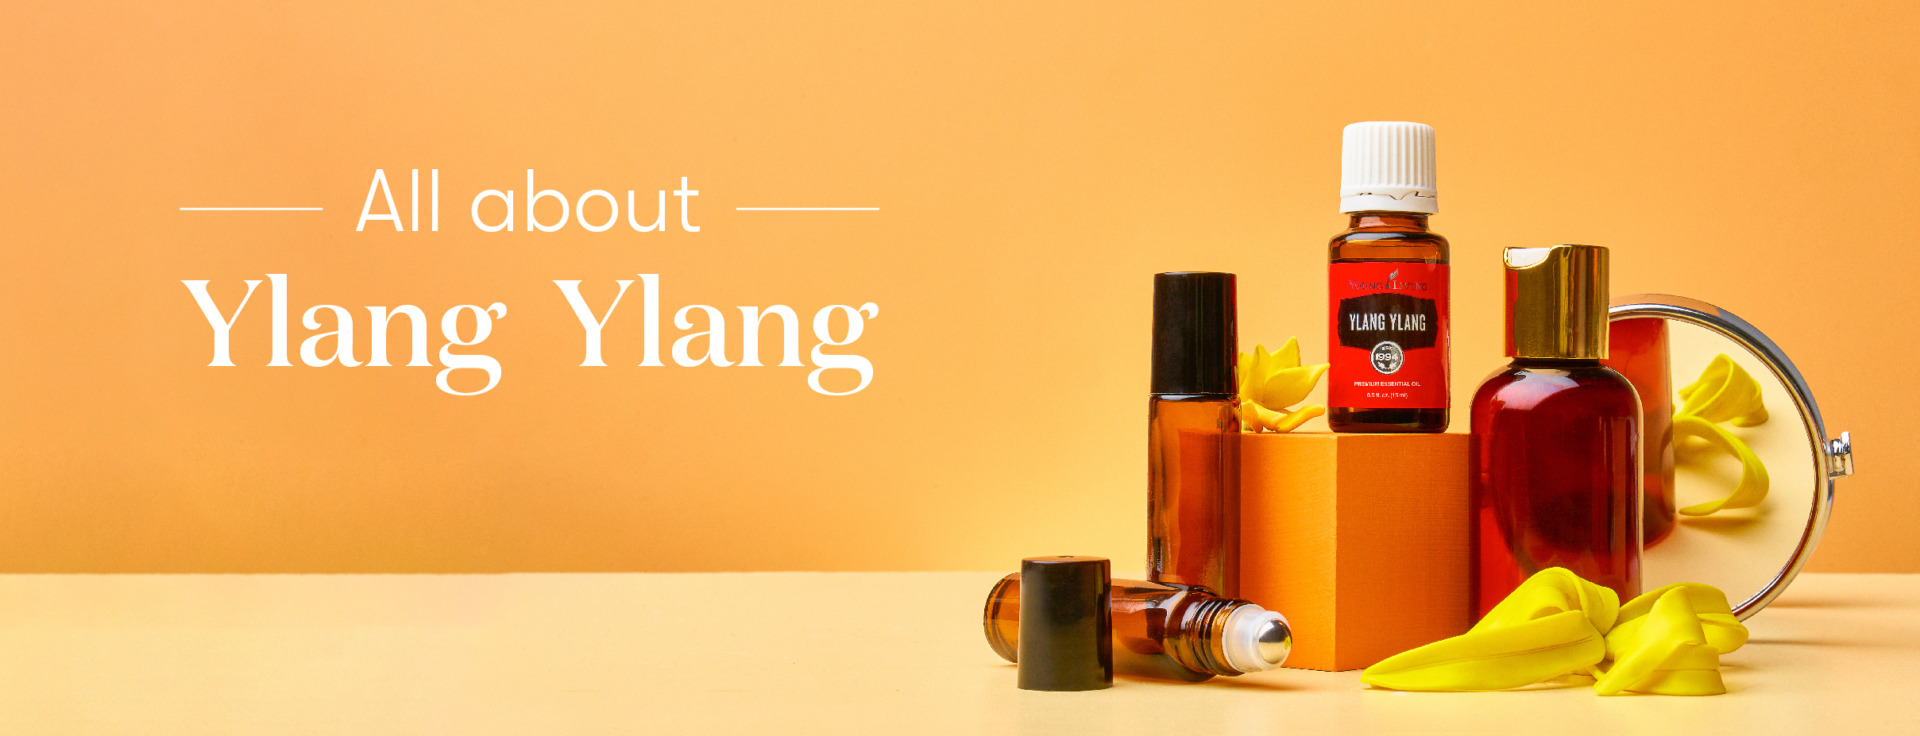 Blog-All about Ylang Ylang